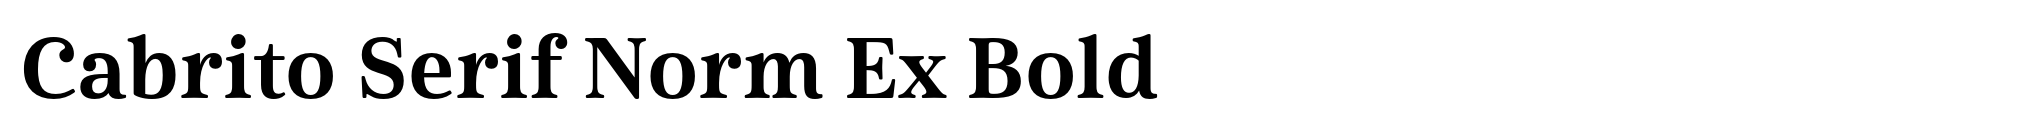 Cabrito Serif Norm Ex Bold image